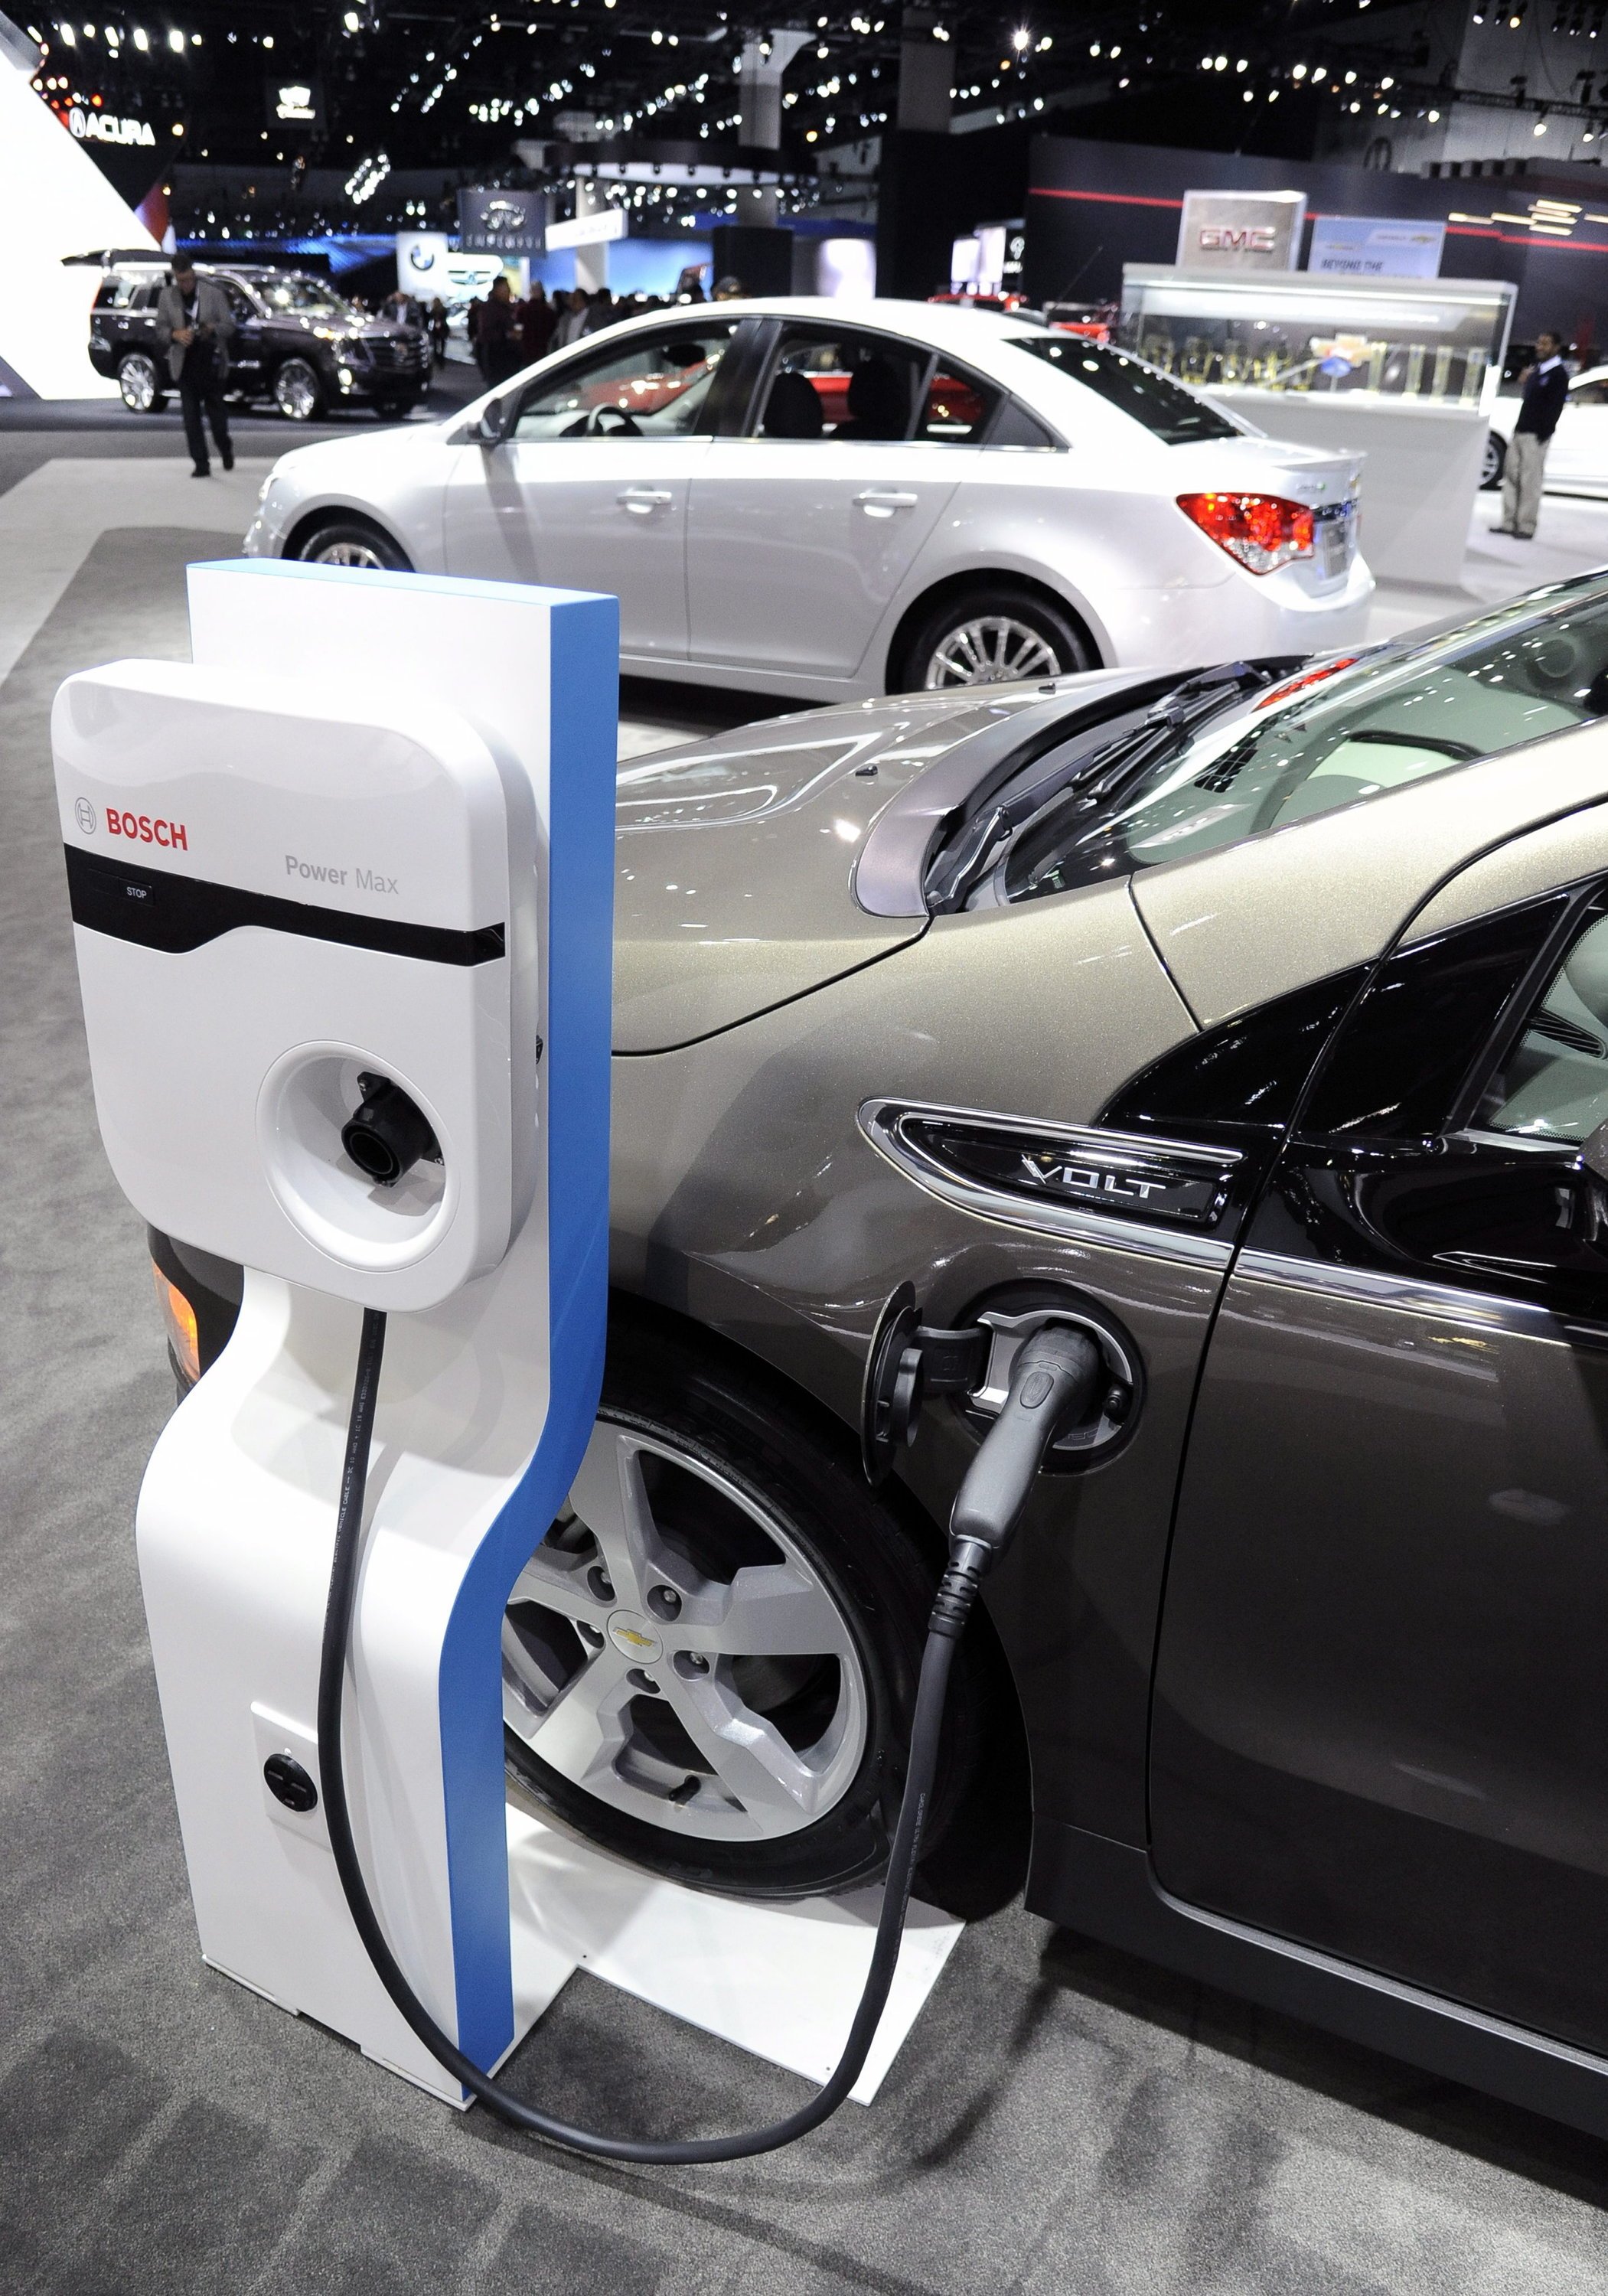 Ladetechnik von Bosch auf der LA Auto Show in Los Angeles: In Kalifornien sind Elektroautos wie der Tesla stark verbreitet. Im Bild ein Chevrolet Volt an der Ladesäule.